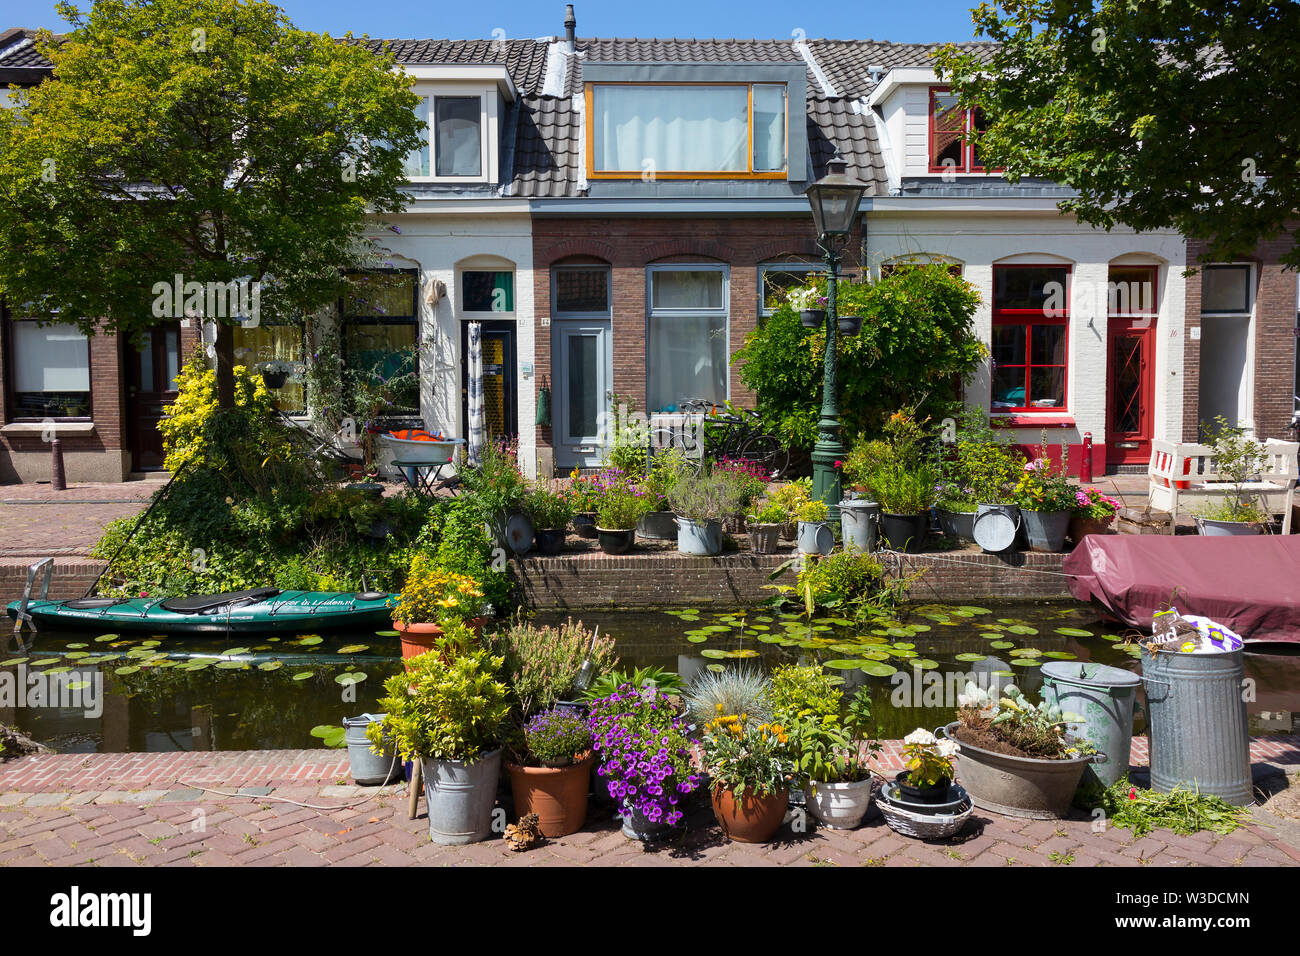 Leiden, Holland - Juli 05, 2019: Kijfgracht, kleinen Kanal im historischen panoramaeinstellungen von Leiden Stadt geschmückt mit Blumen und Pflanzen Stockfoto